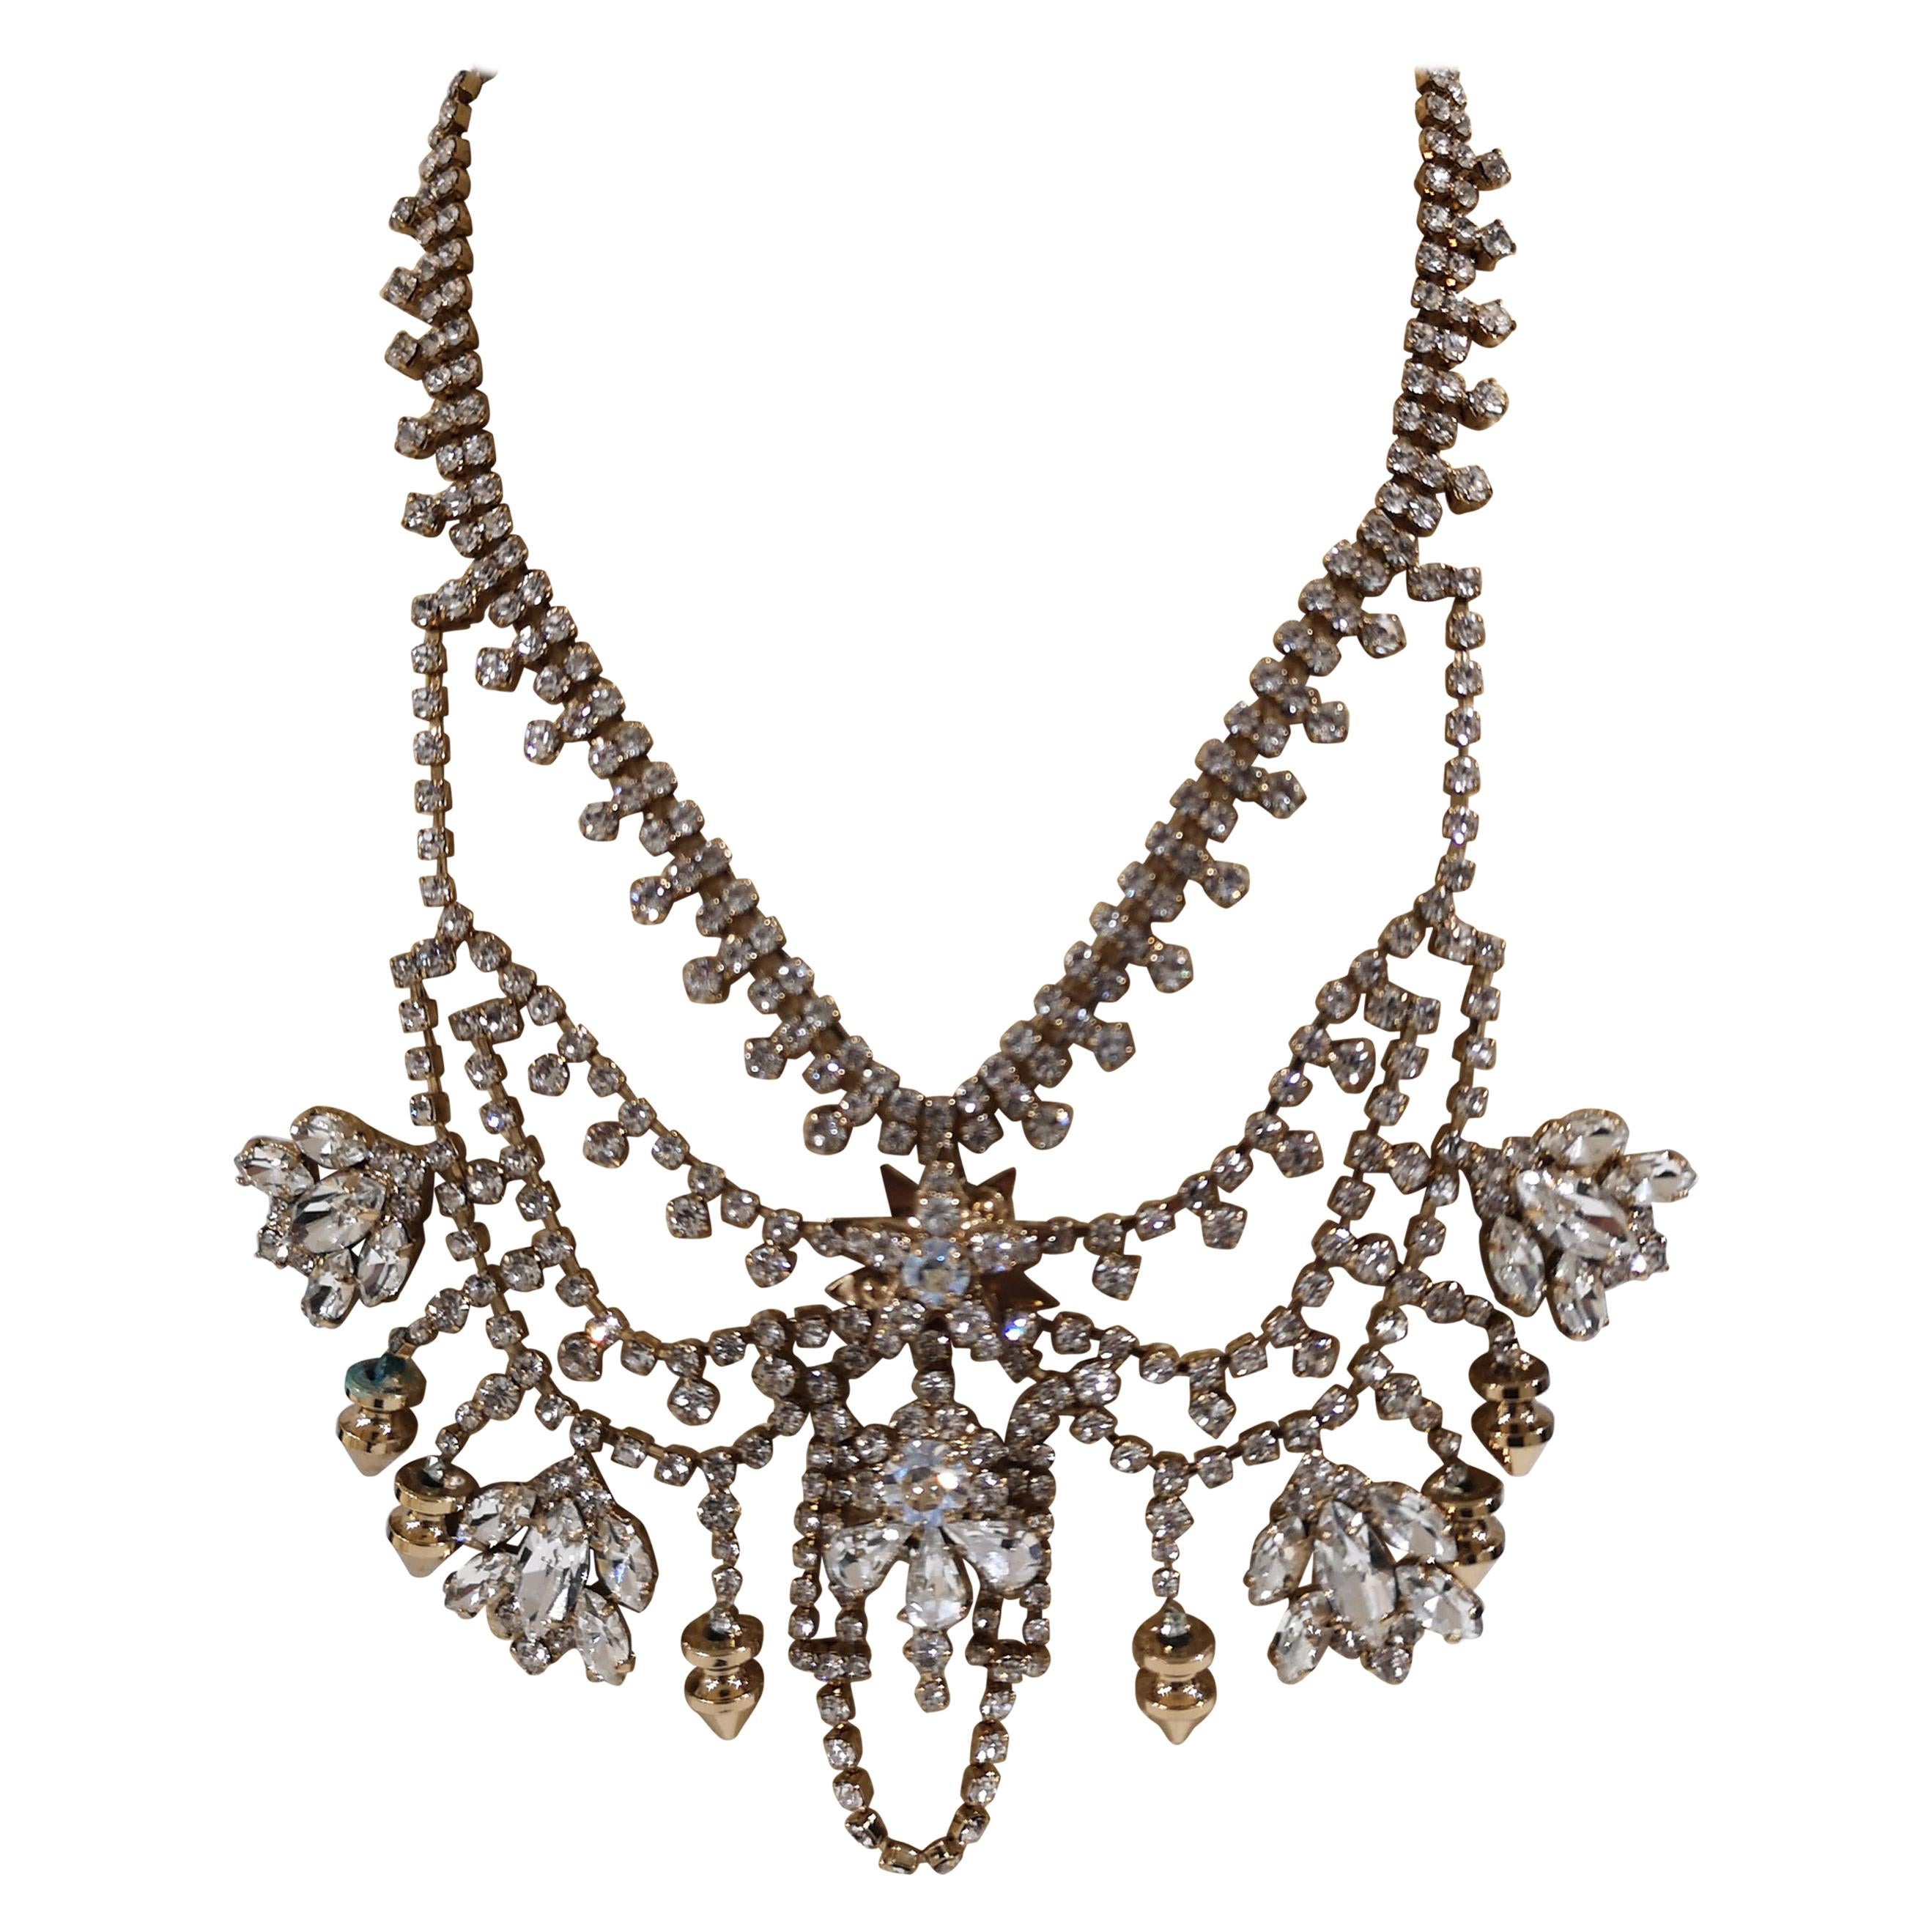 LisaC Crystal swarovsky necklace